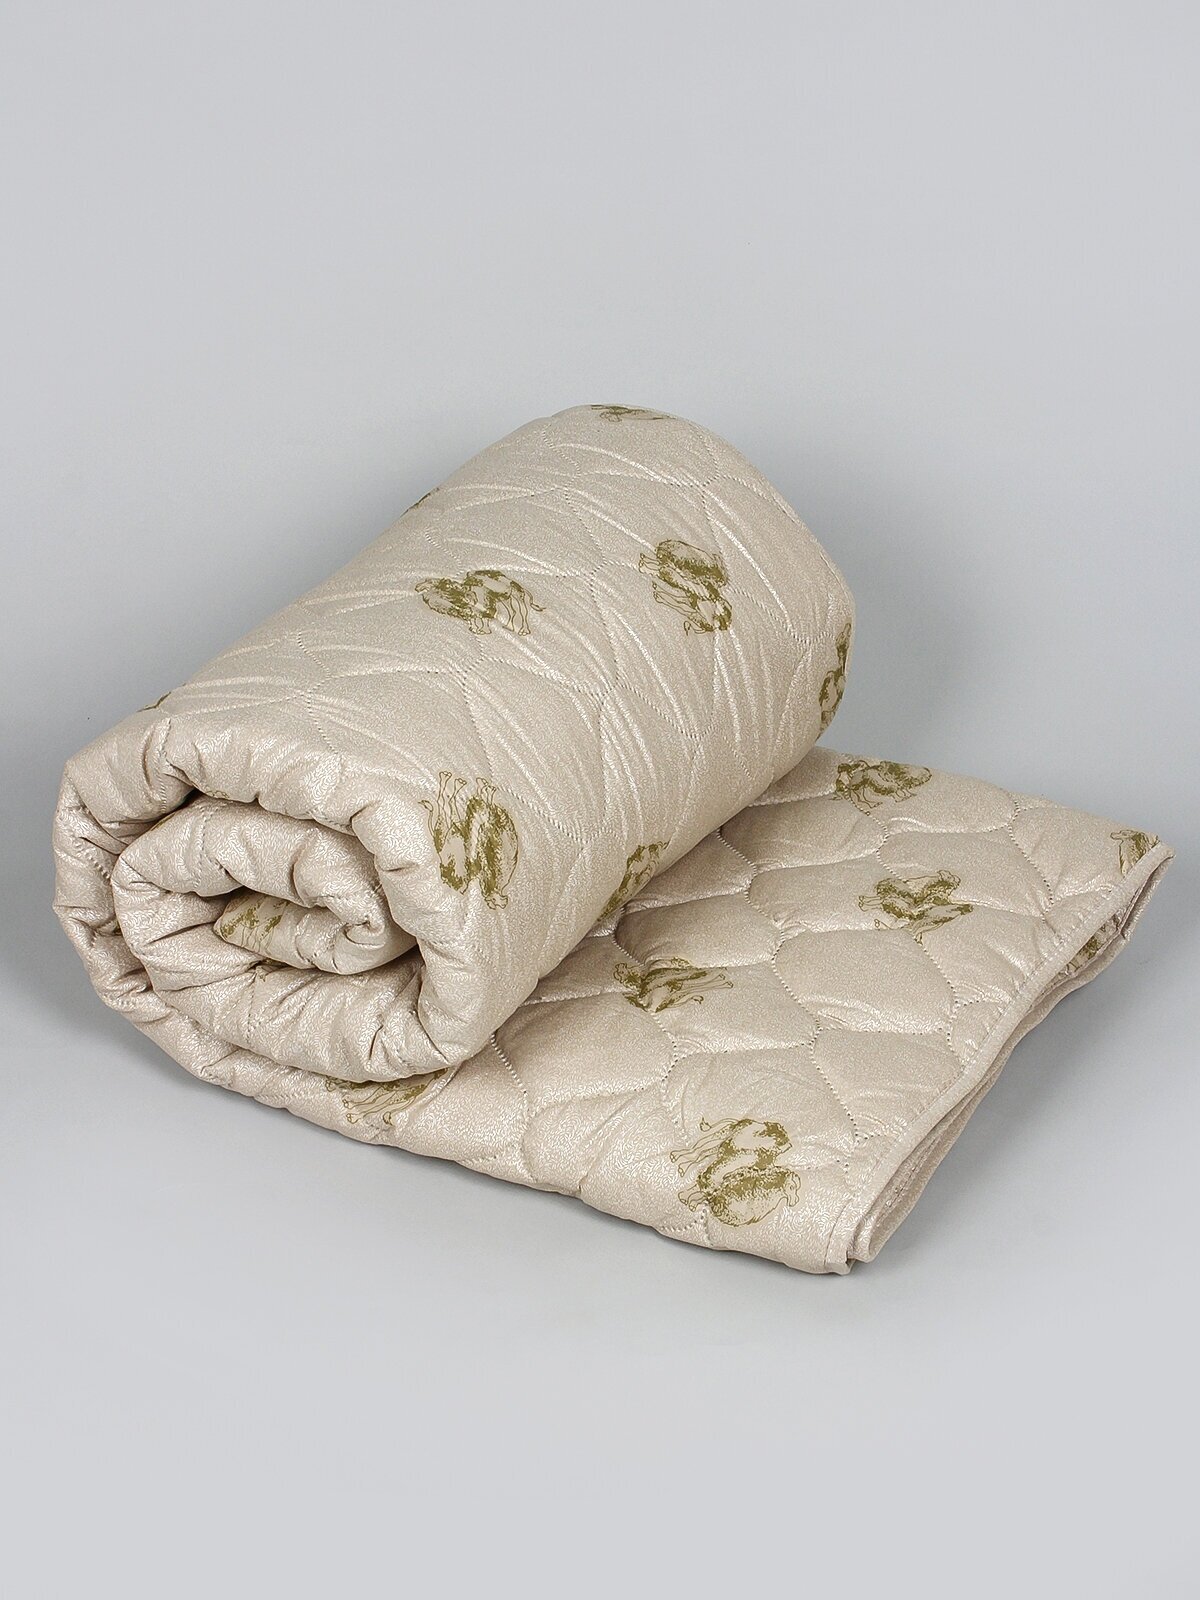 Одеяло "Верблюжья шерсть" полновесное, Евро размер, в поплексе, плотность 300 г/м2 - фотография № 4